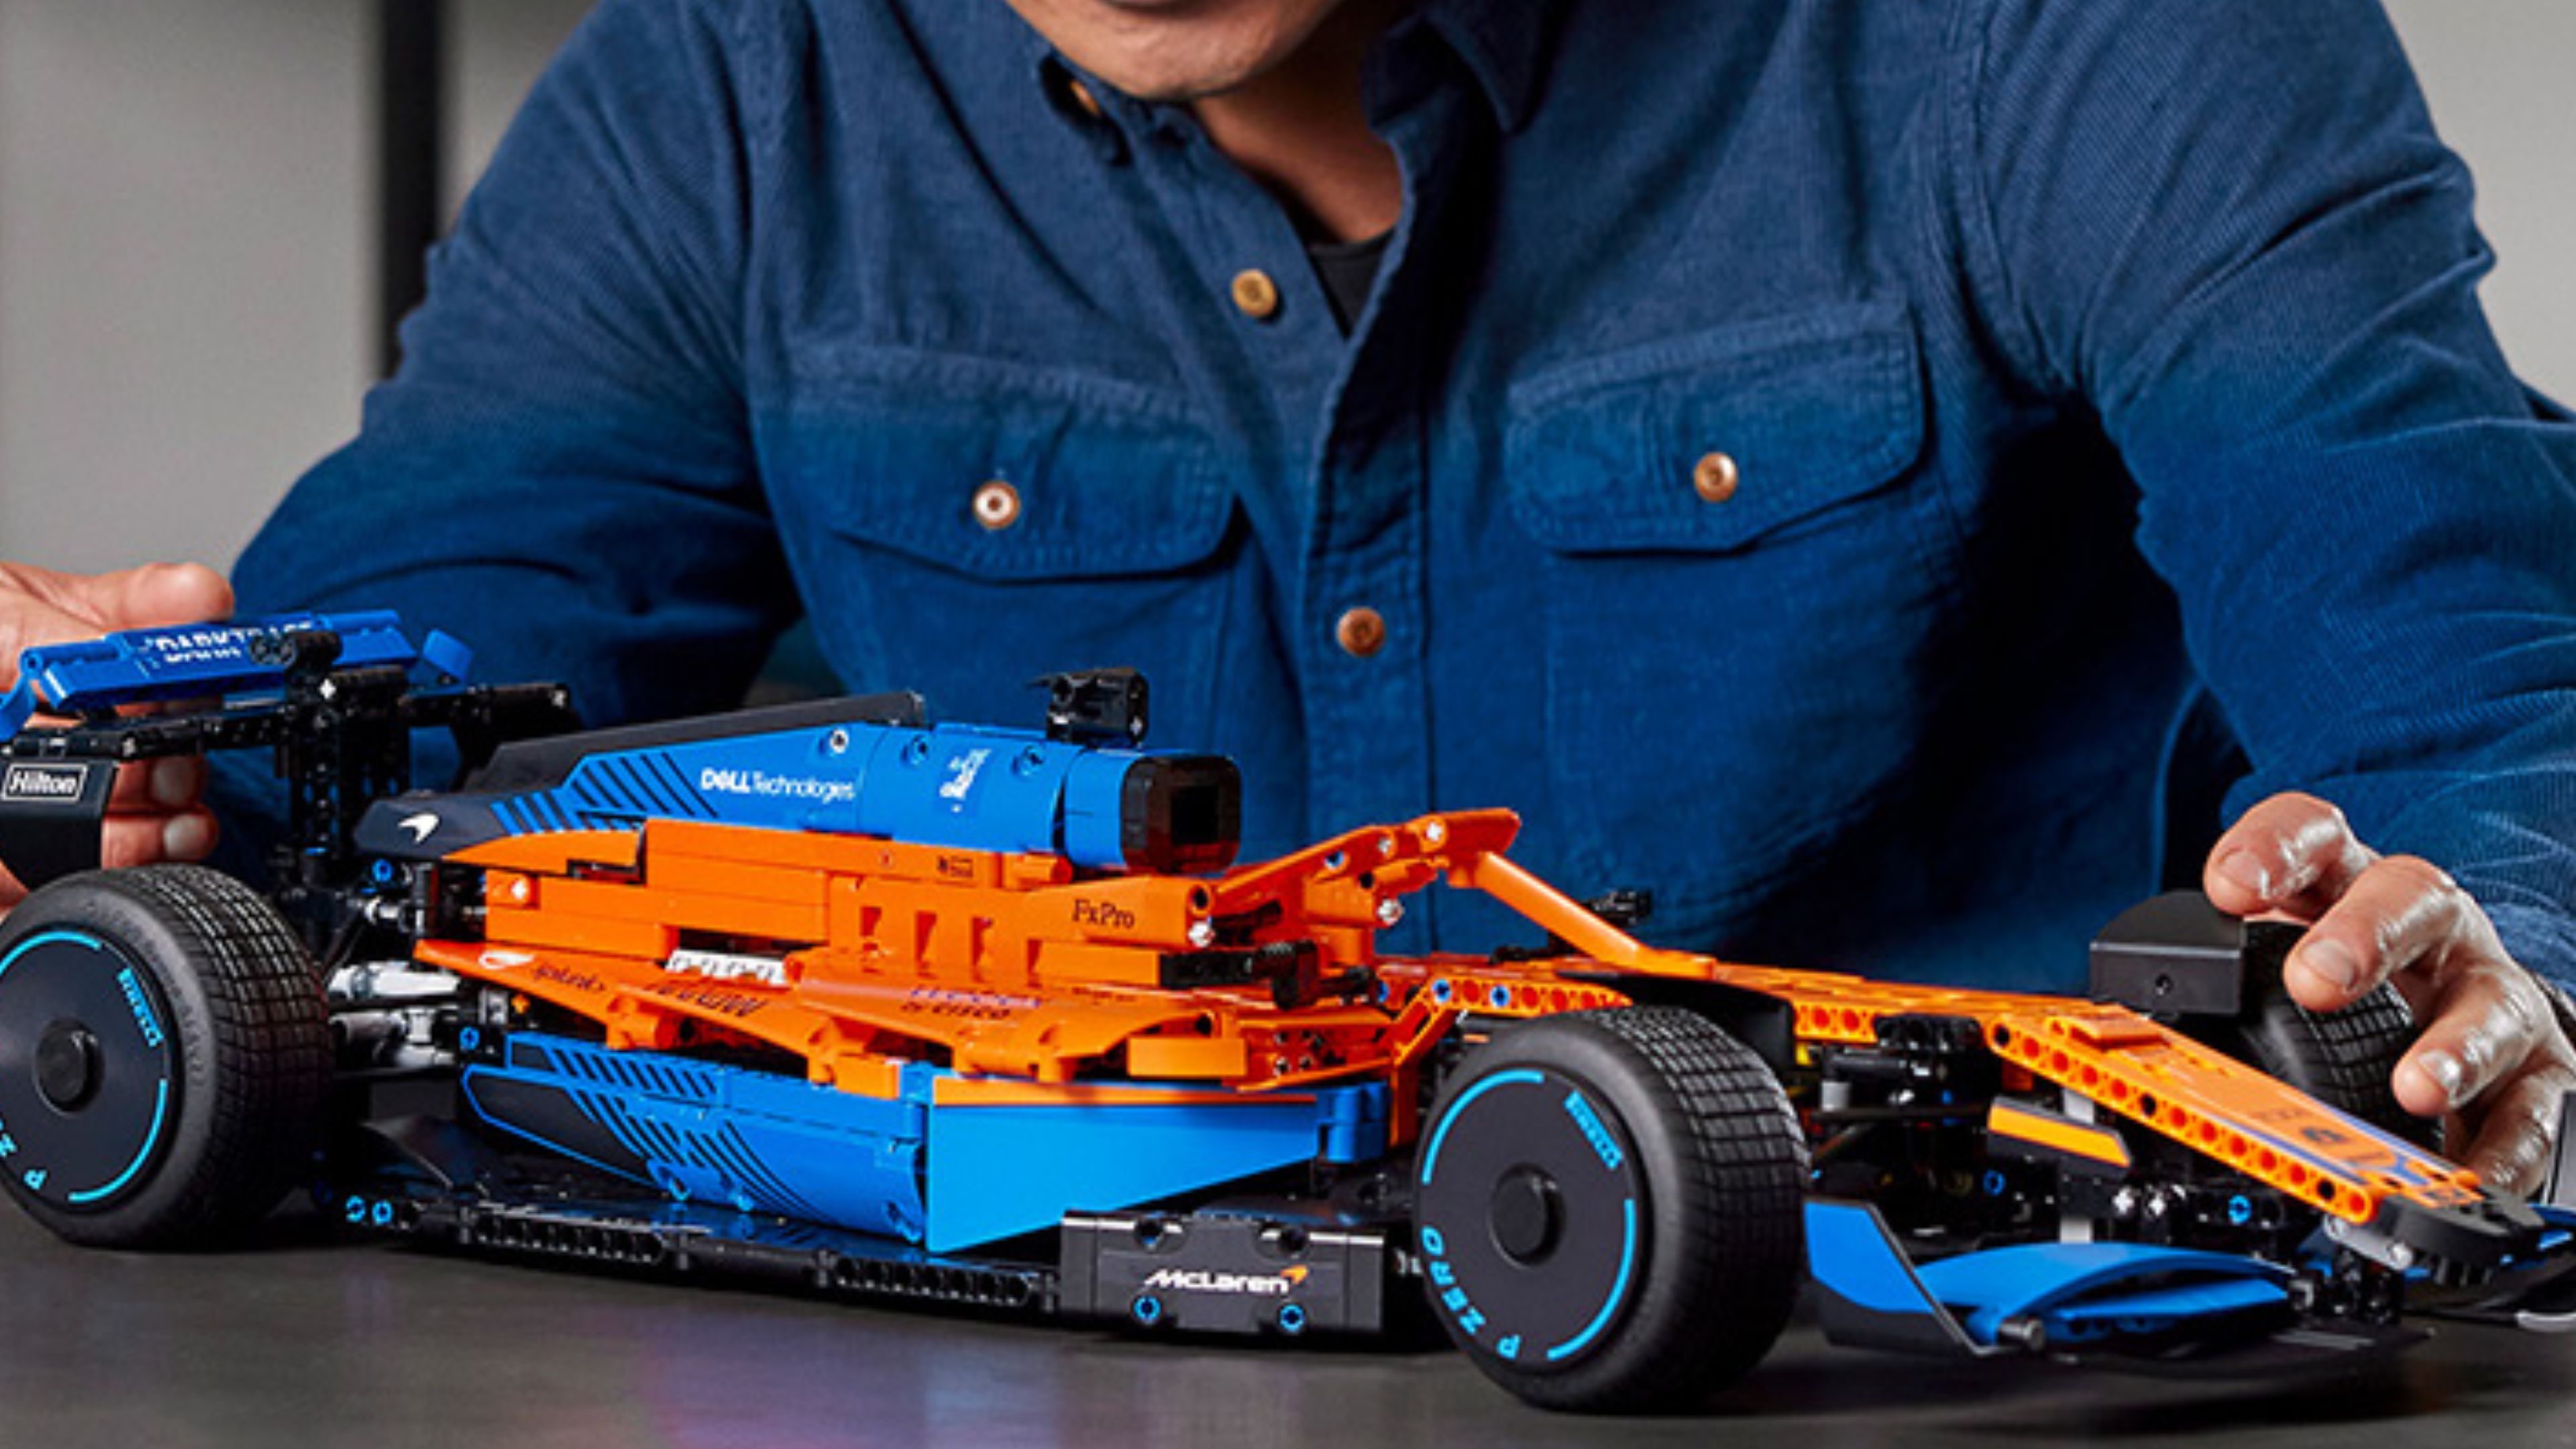 Los mejores LEGO Technic de coches que puedes regalar estas navidades